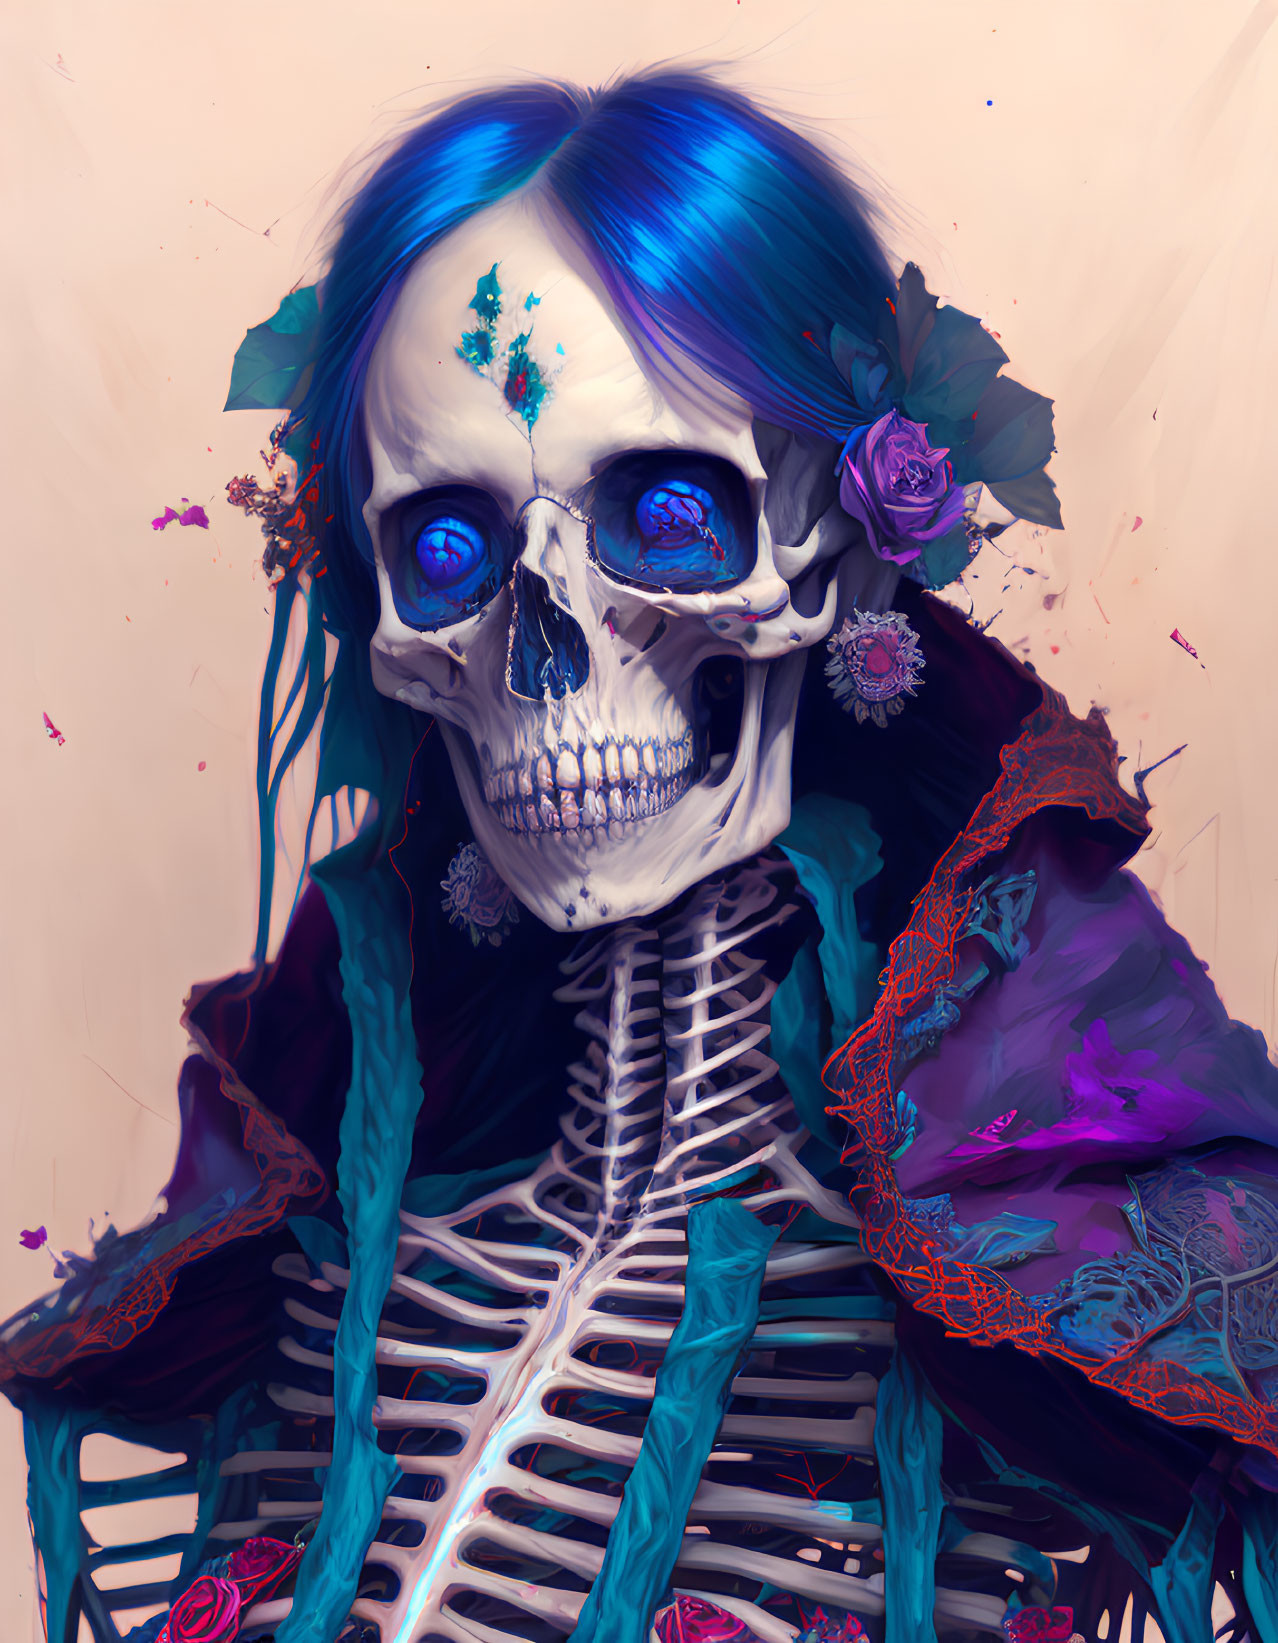 Colorful Flower Adorned Skeleton Illustration on Pastel Background